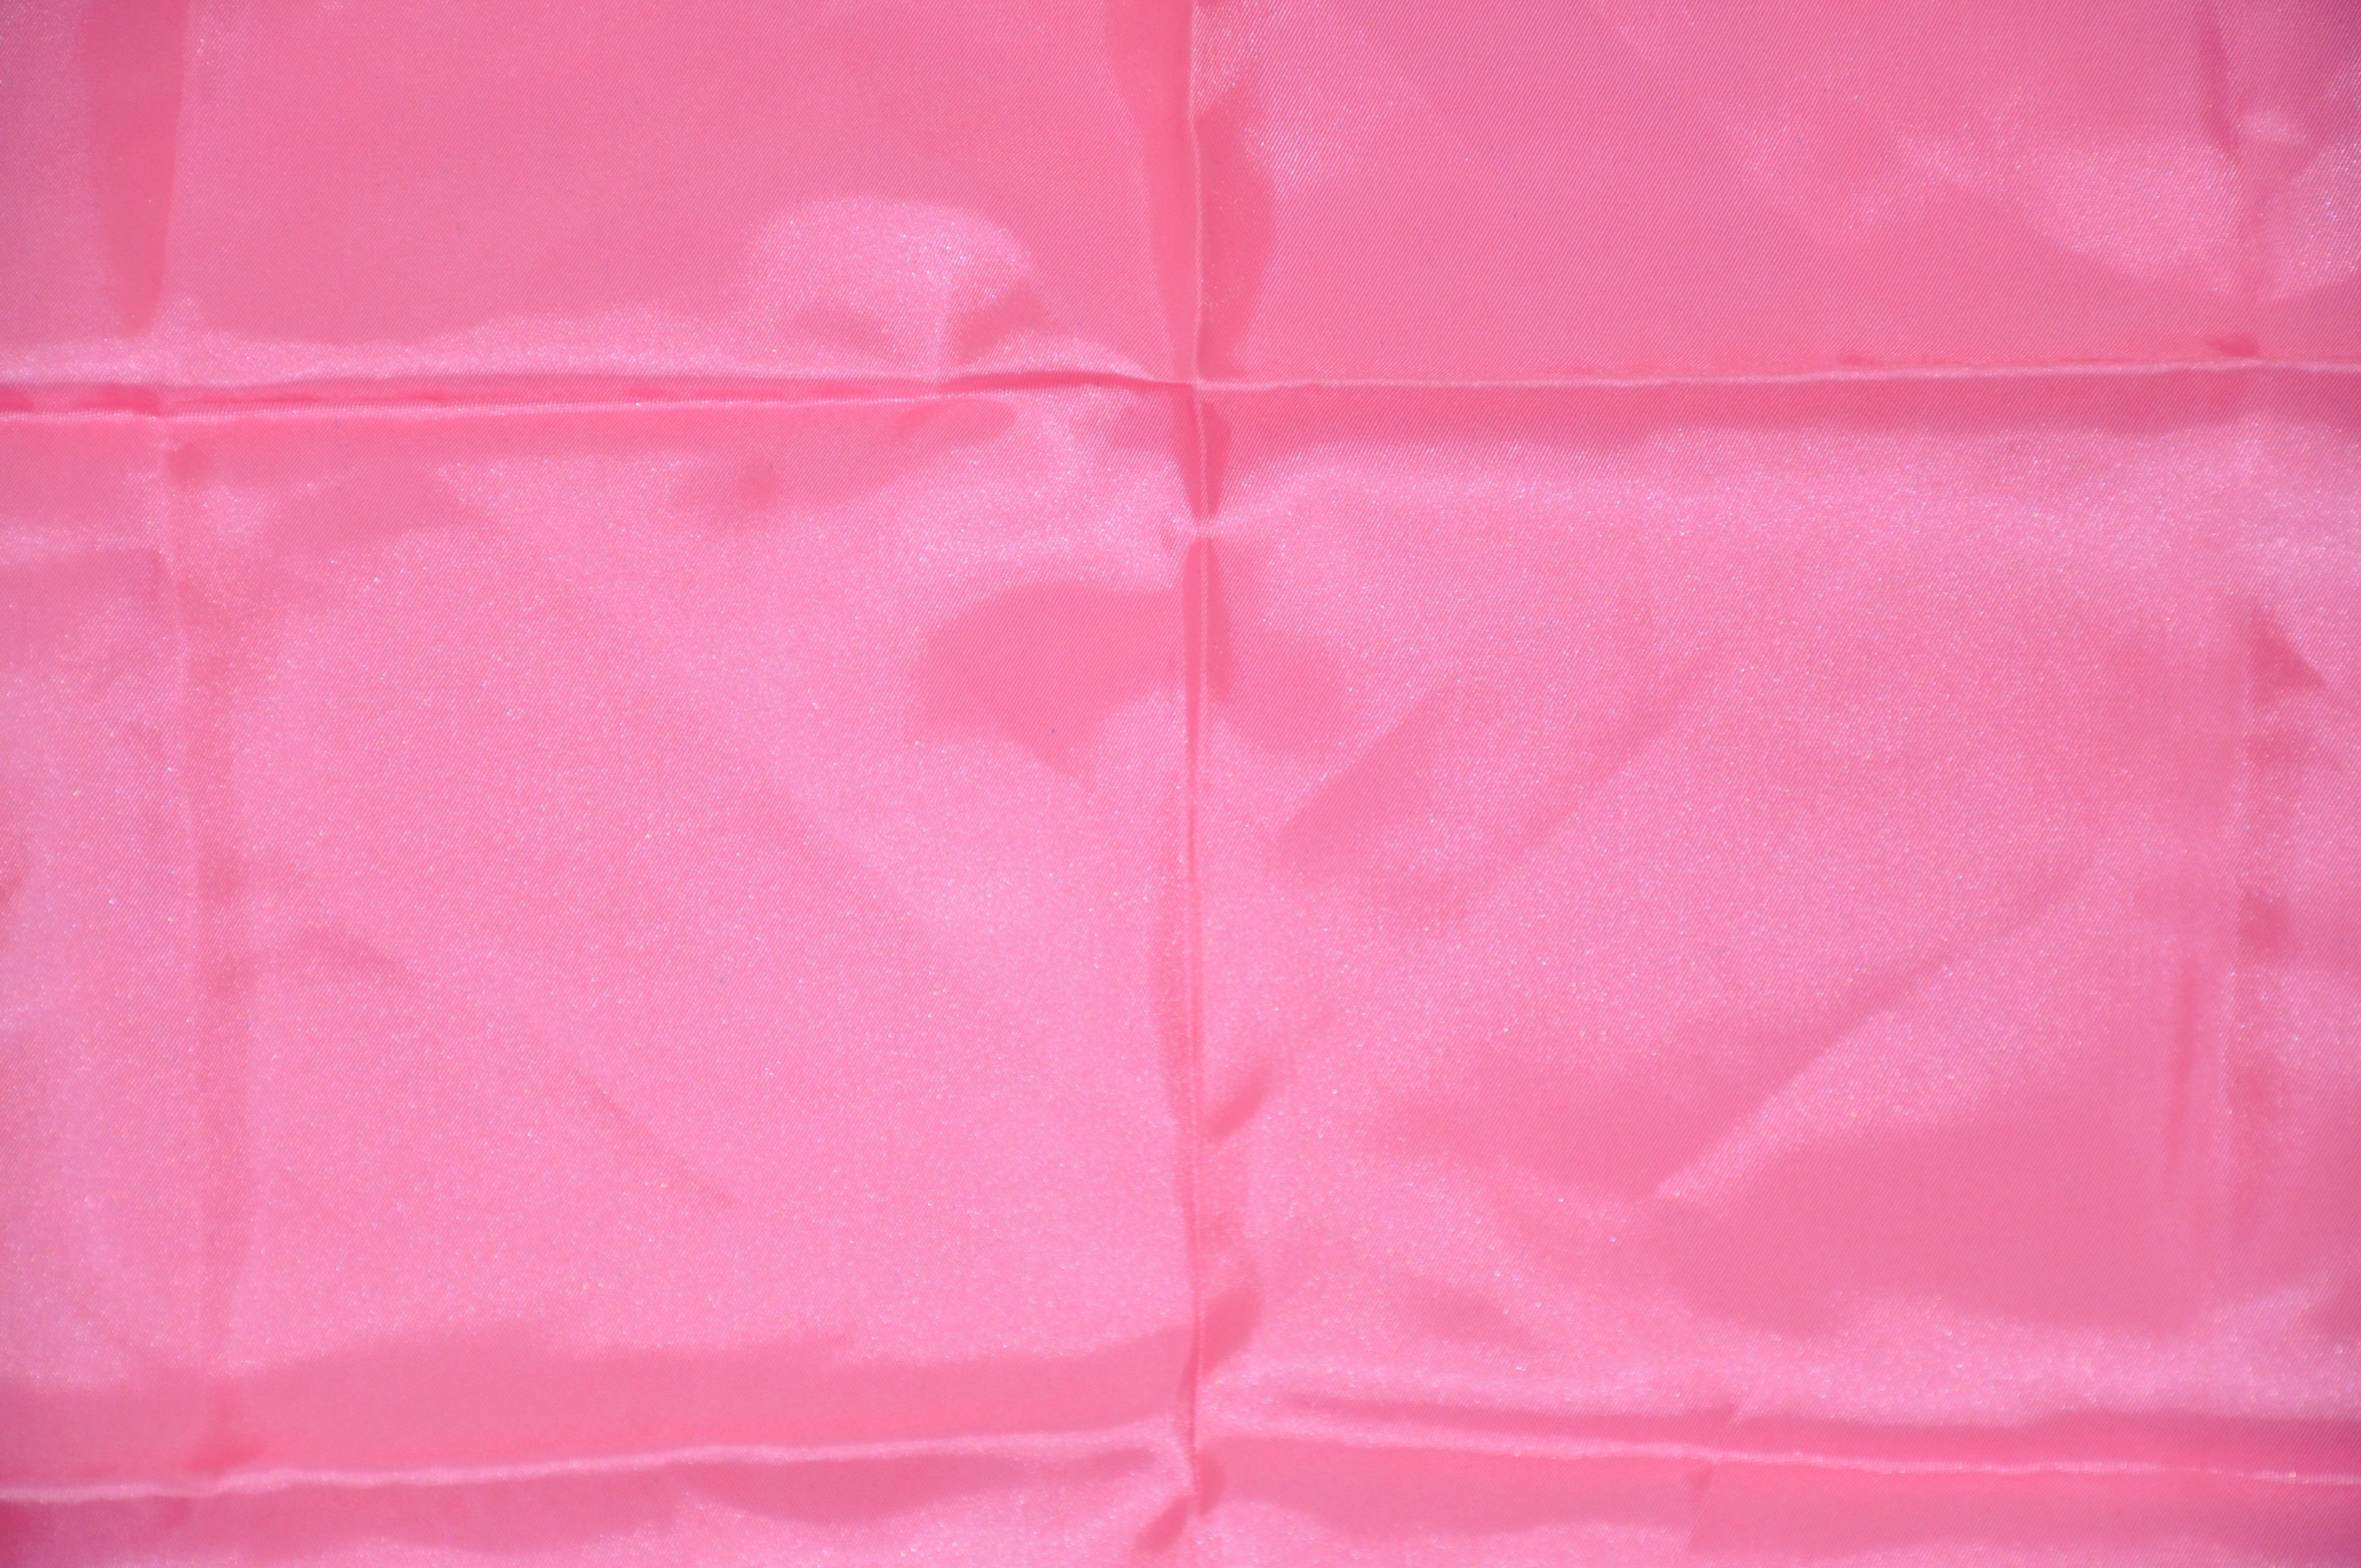        Baar & Beards wunderbar elegante marineblaue Polka-Dot-Bordüren, die ein kräftiges rosa Zentrum umgeben und mit handgerollten Rändern akzentuiert sind, messen 21 Zoll mal 21 Zoll. Hergestellt in Japan.